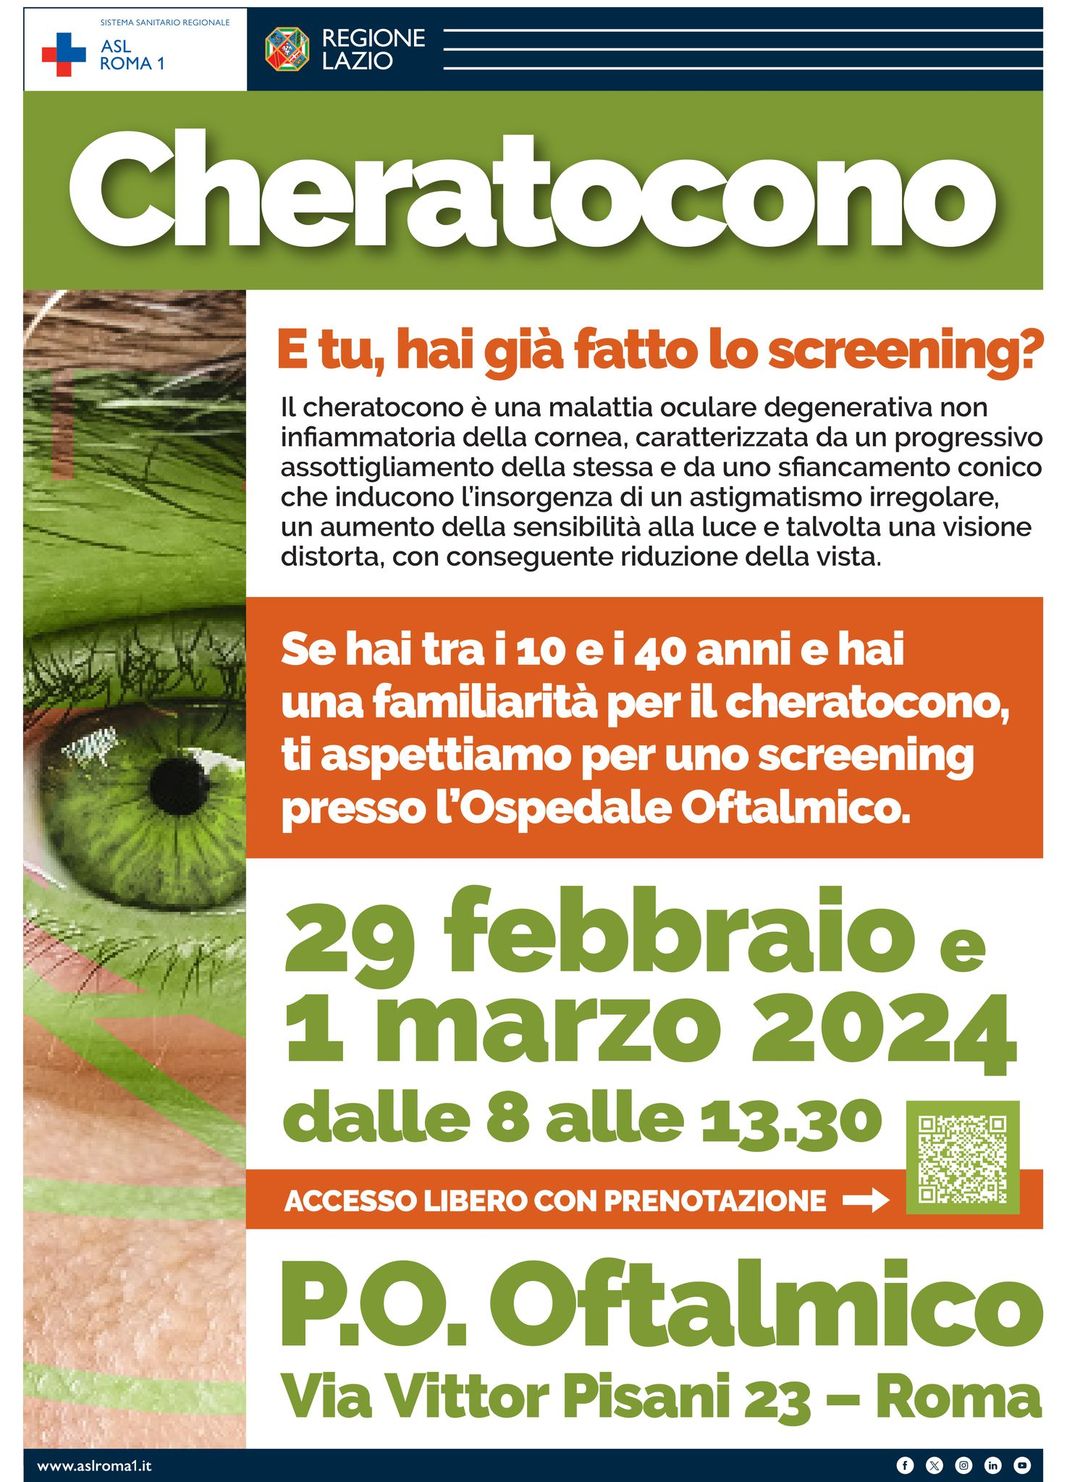 Cheratocono, due open day con screening gratis all'Oftalmico di Roma 1